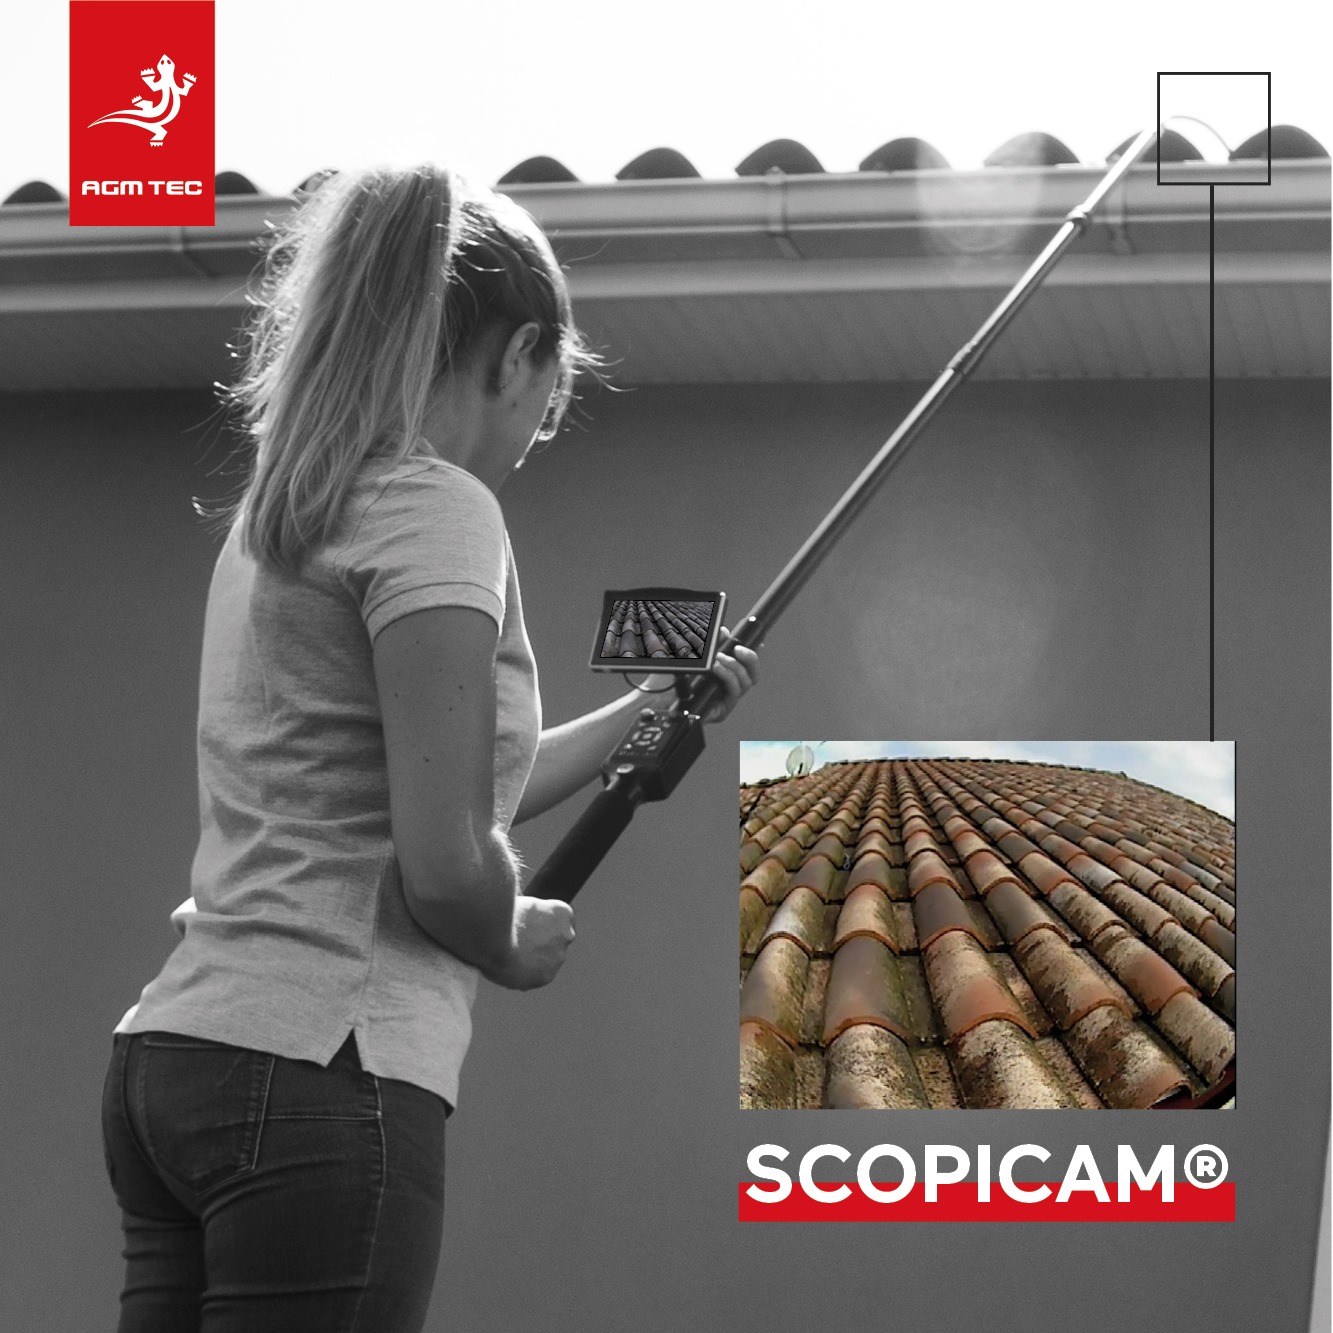 Scopicam® – l’endoscope d’inspection télescopique idéale pour inspecter en hauteur avec précision